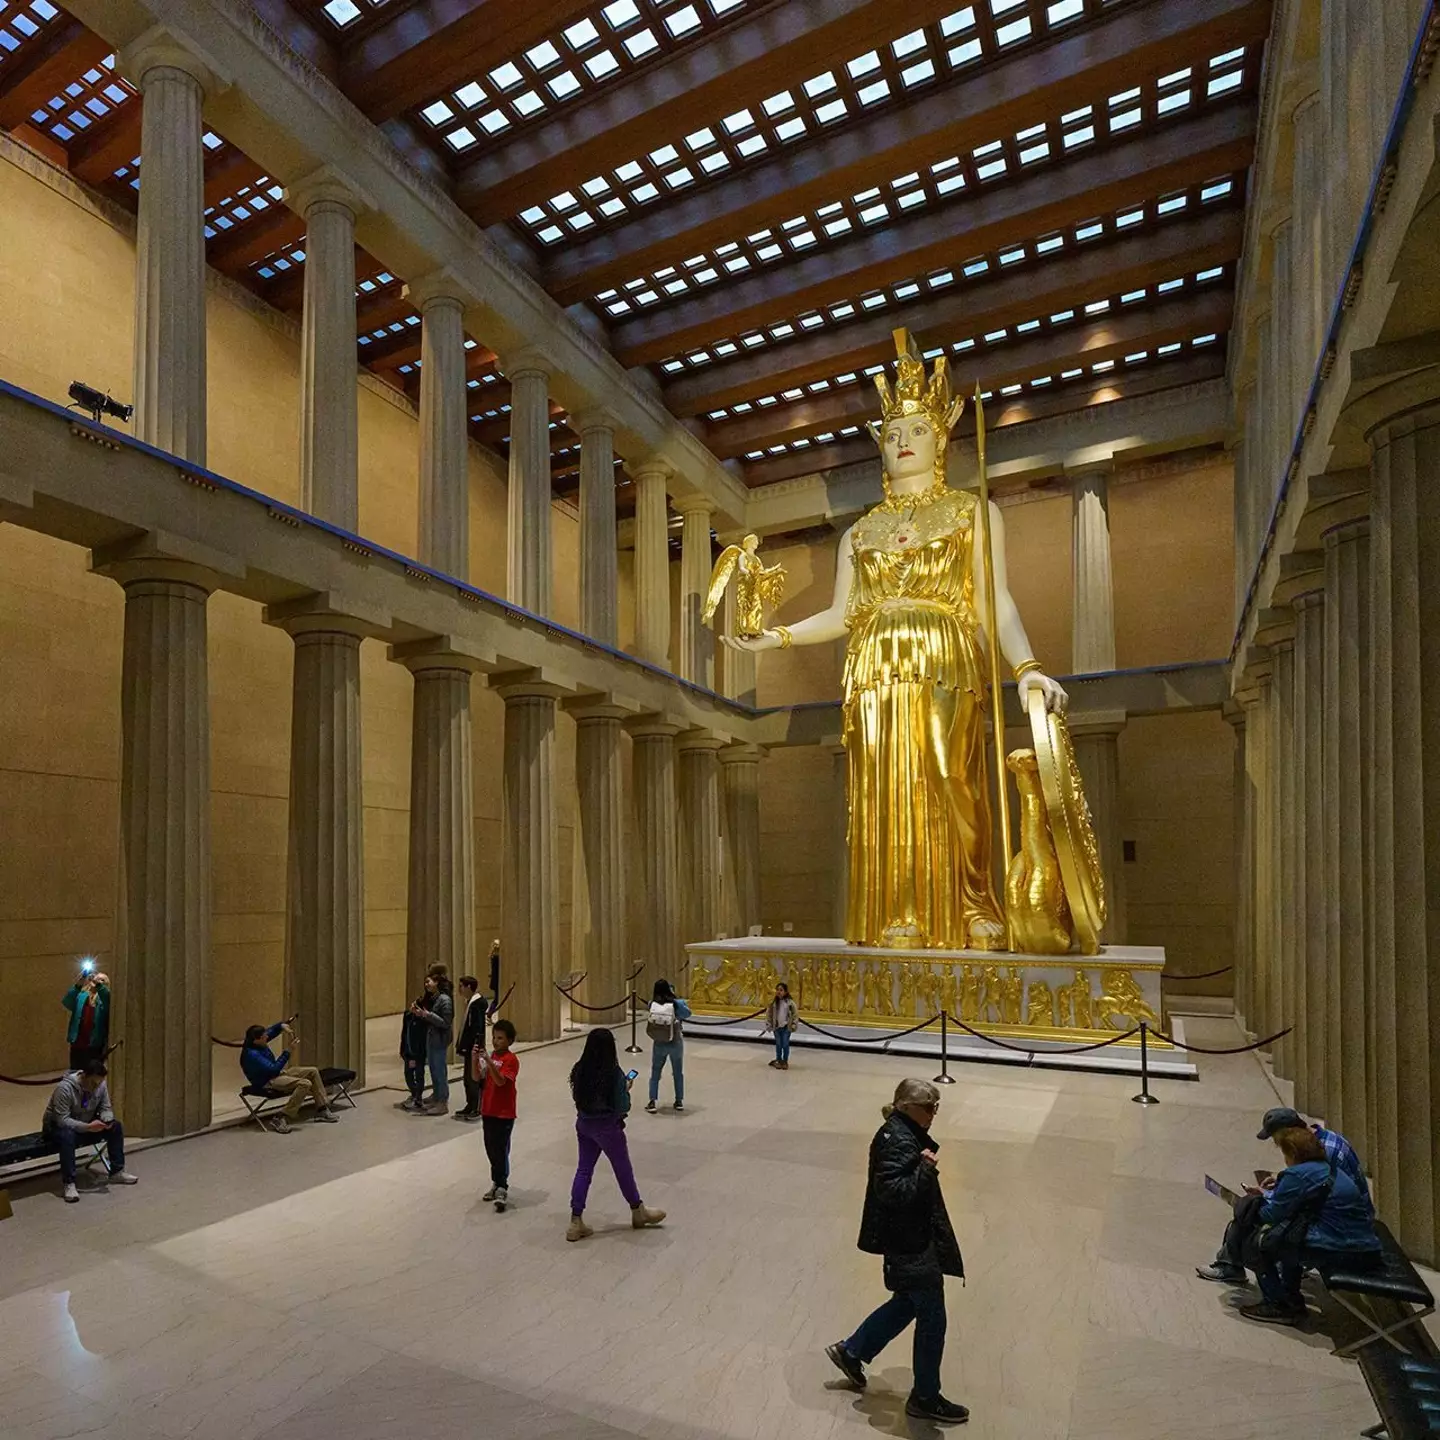 Athena Parthenos statue in the Nashville Parthenon. (nashvilleparthenon/Instagram)